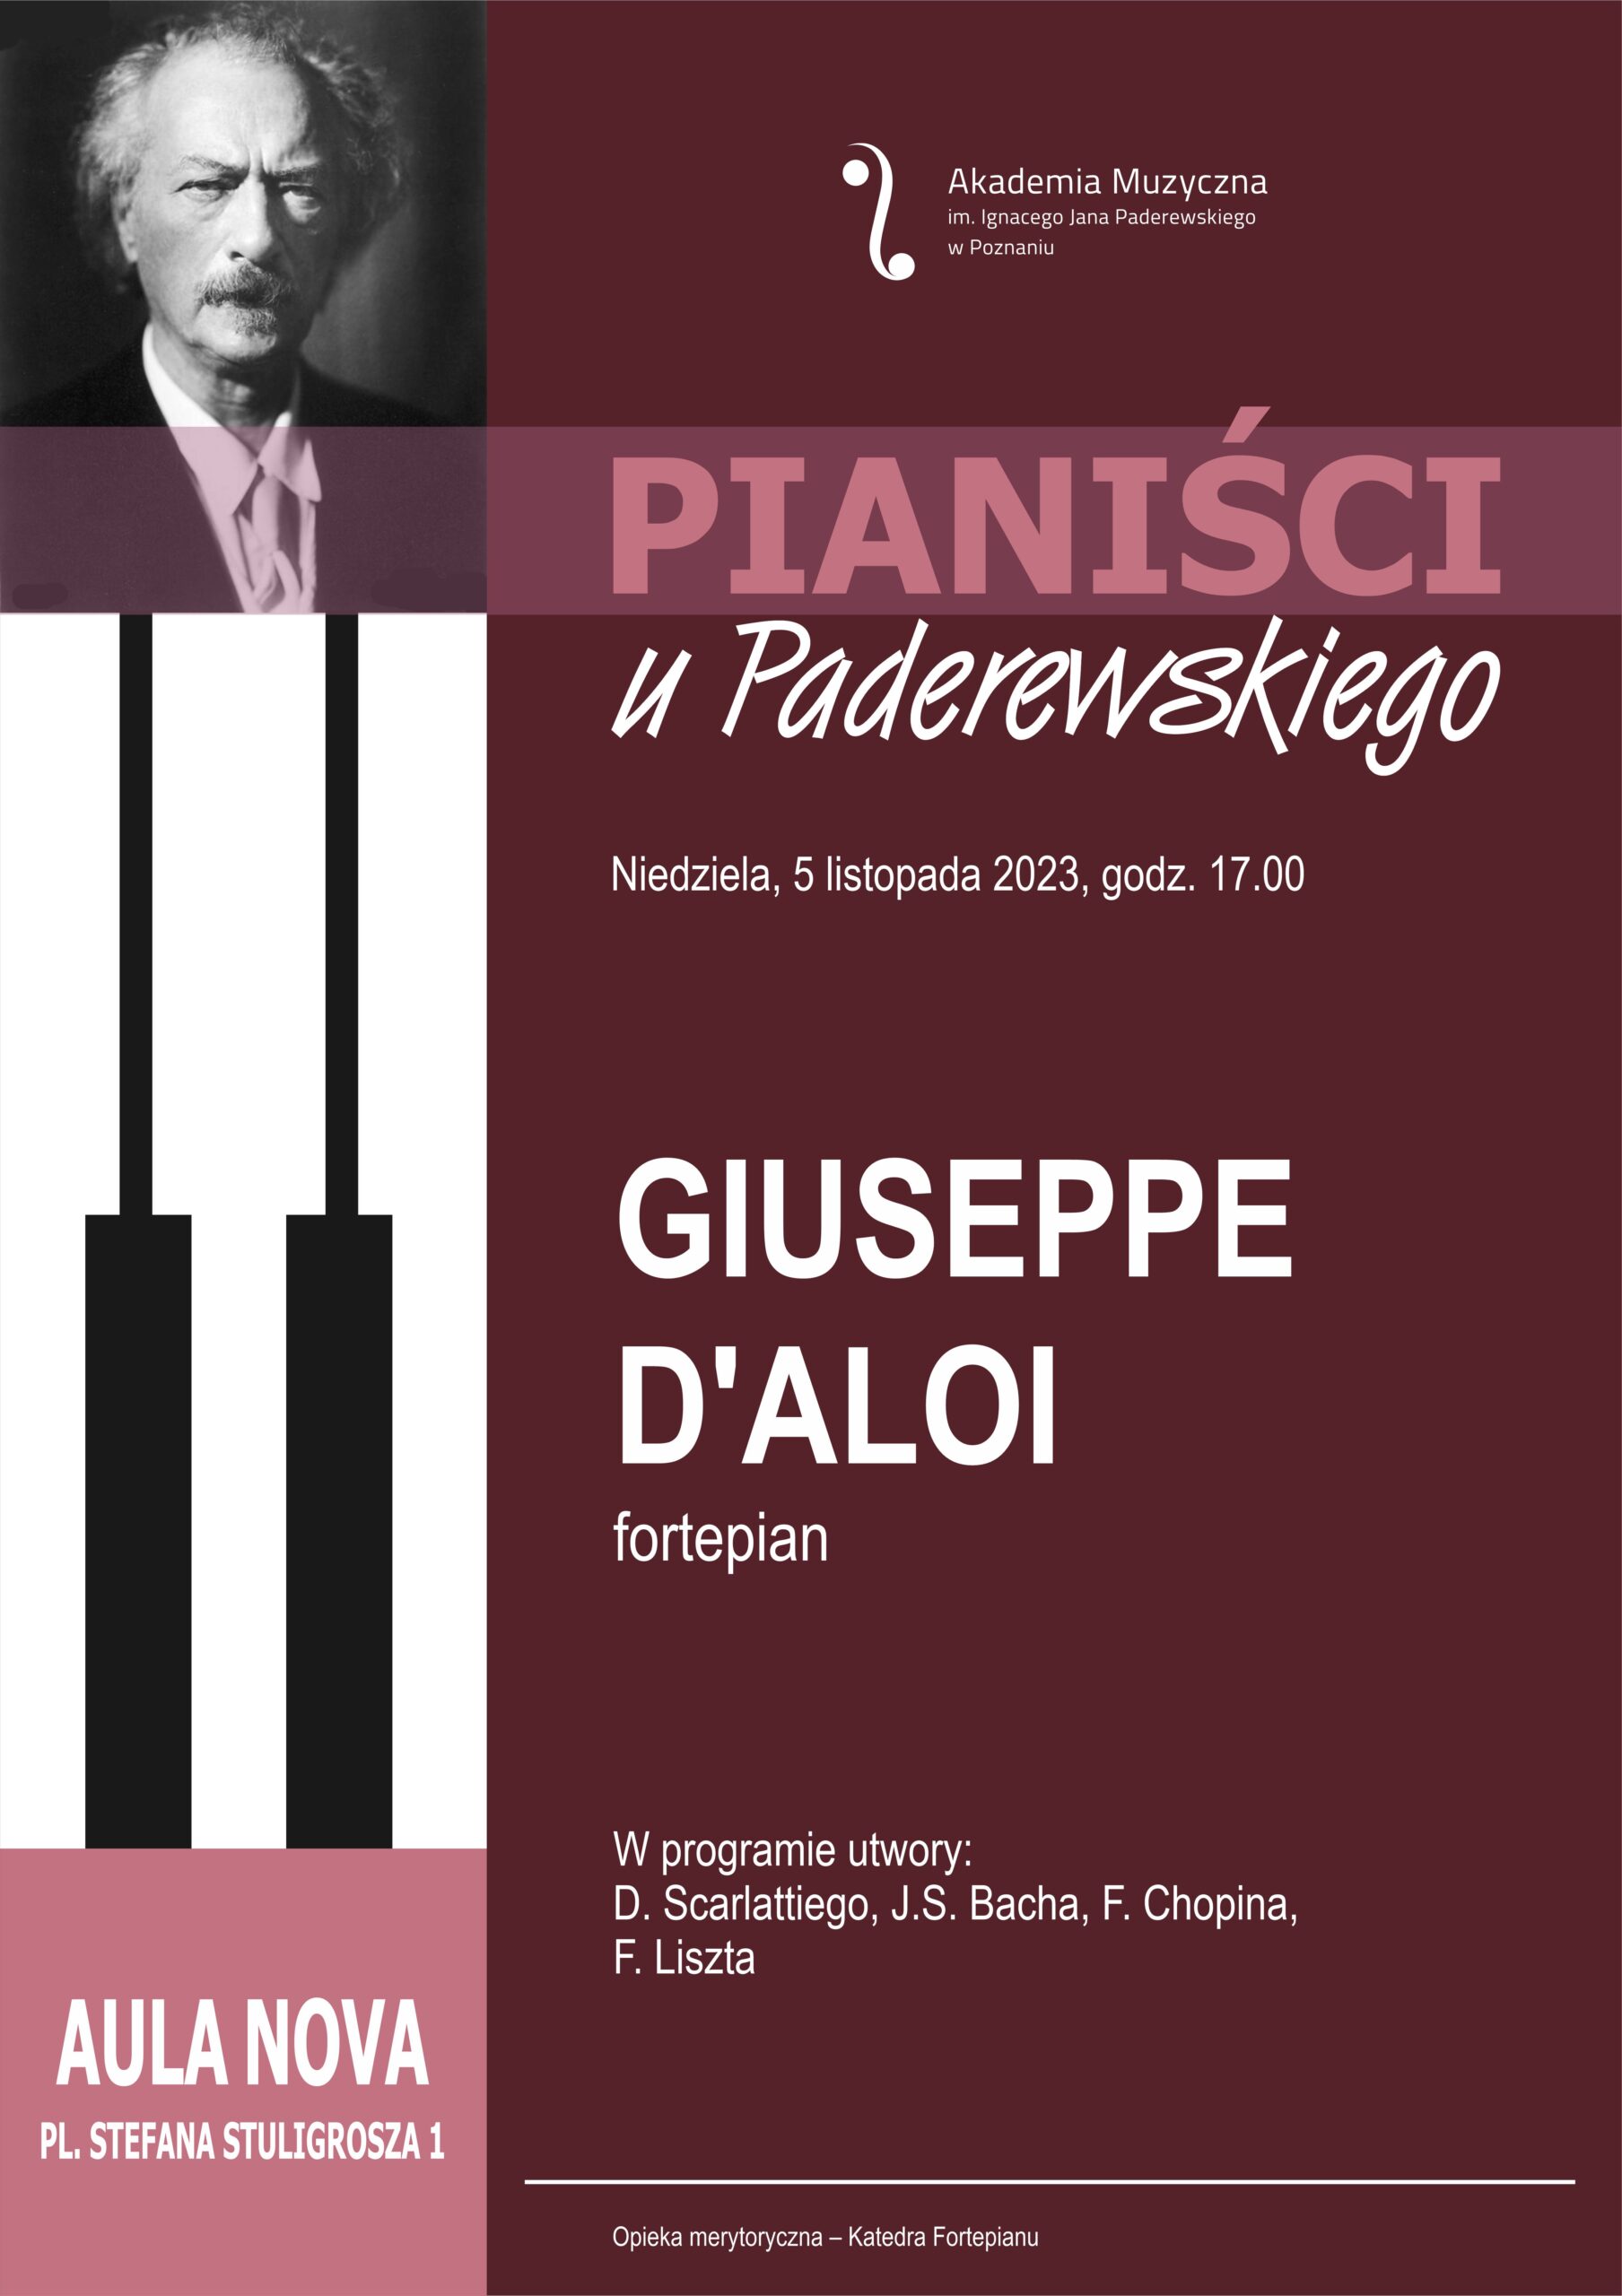 Afisz zawiera informacje na temat recitalu Giusepe D'Aloi